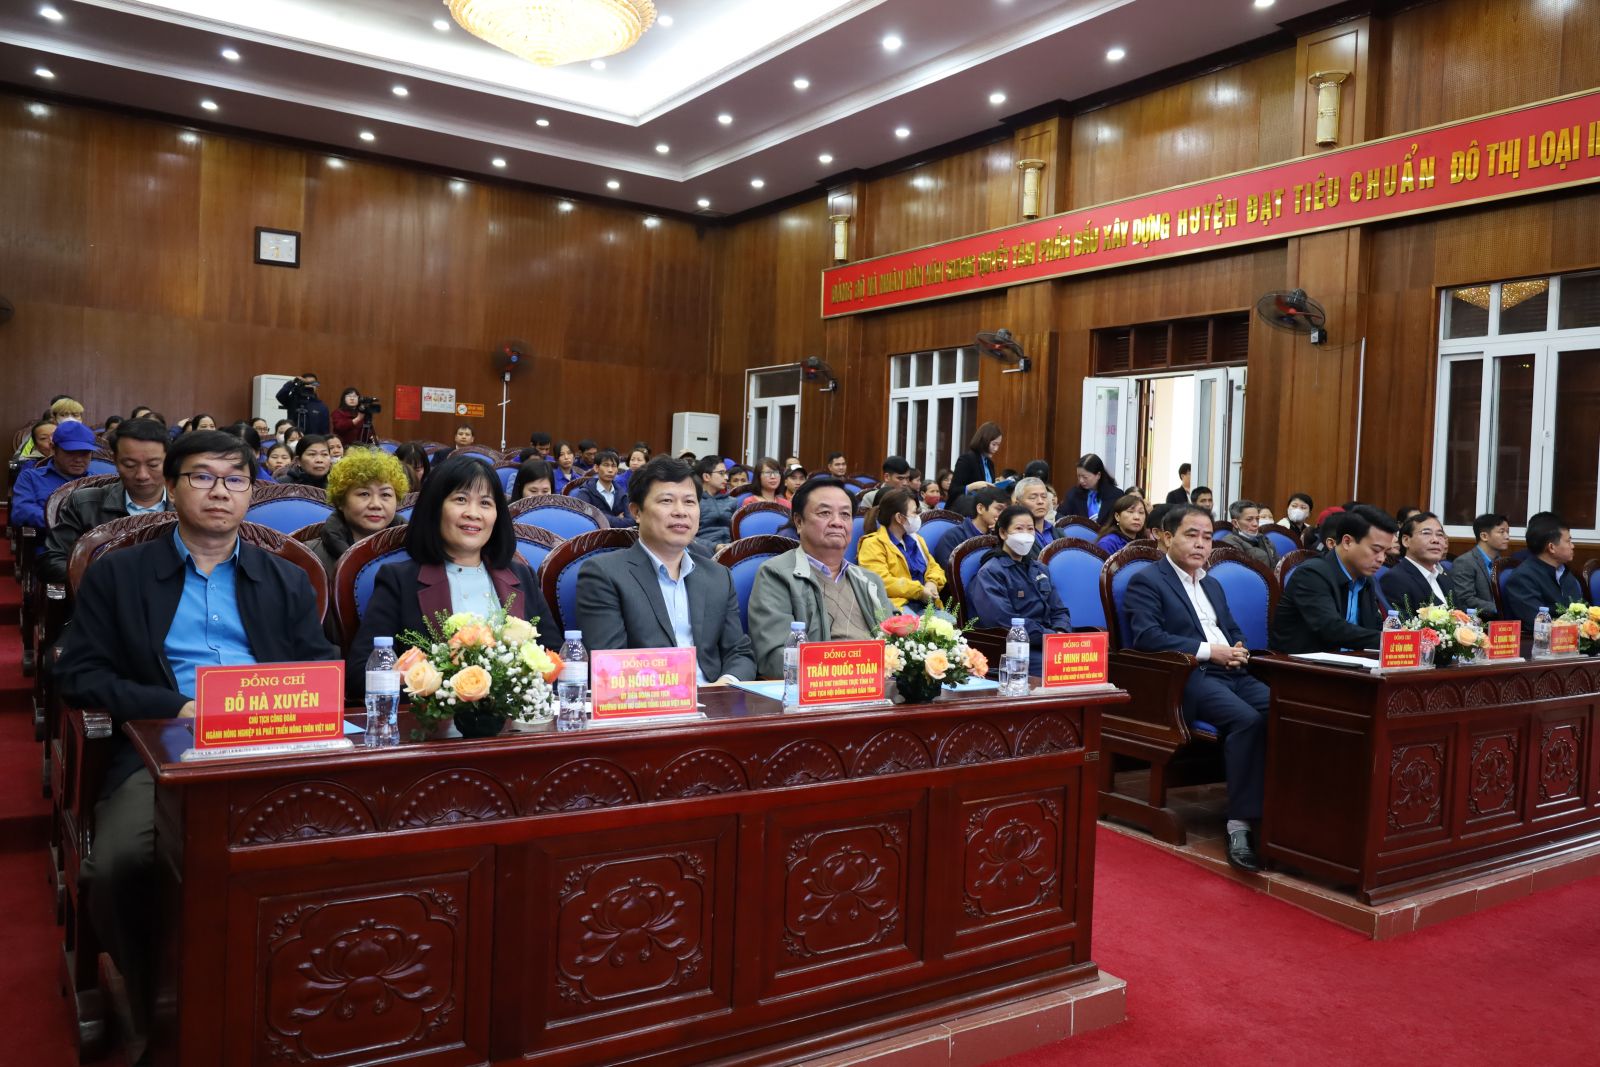 Đồng chí Bộ trưởng Bộ Nông nghiệp và Phát triển nông thôn tặng quà công nhân lao động tỉnh Hưng Yên